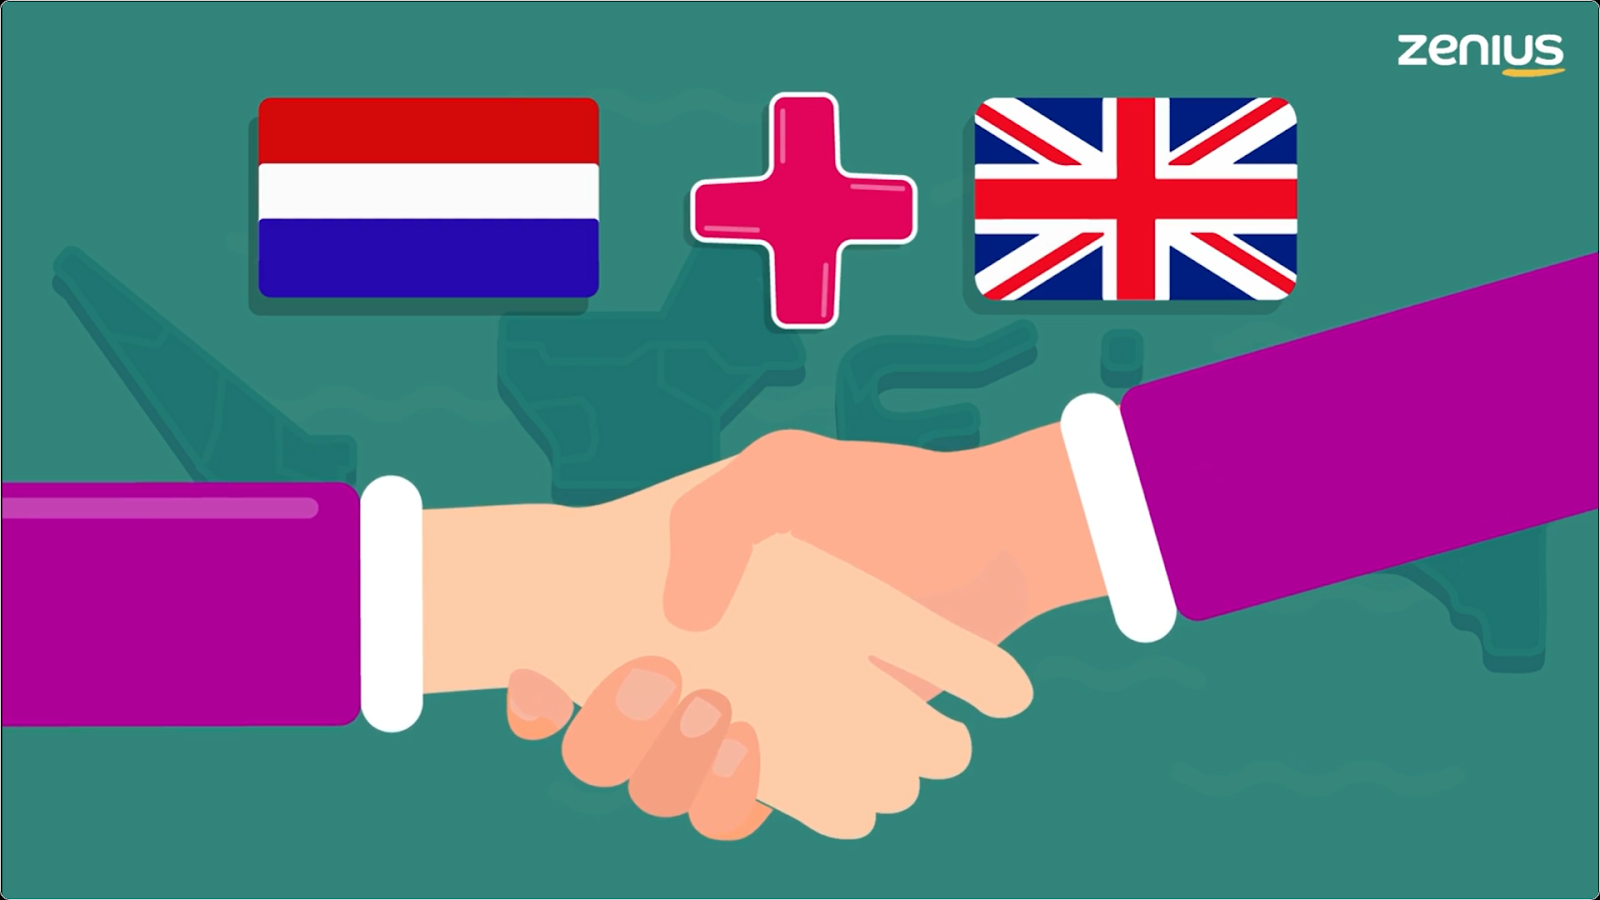 Akhirnya, Belanda meminta bantuan kepada Inggris untuk membersihkan Indonesia dari sisa-sisa penjajahan.